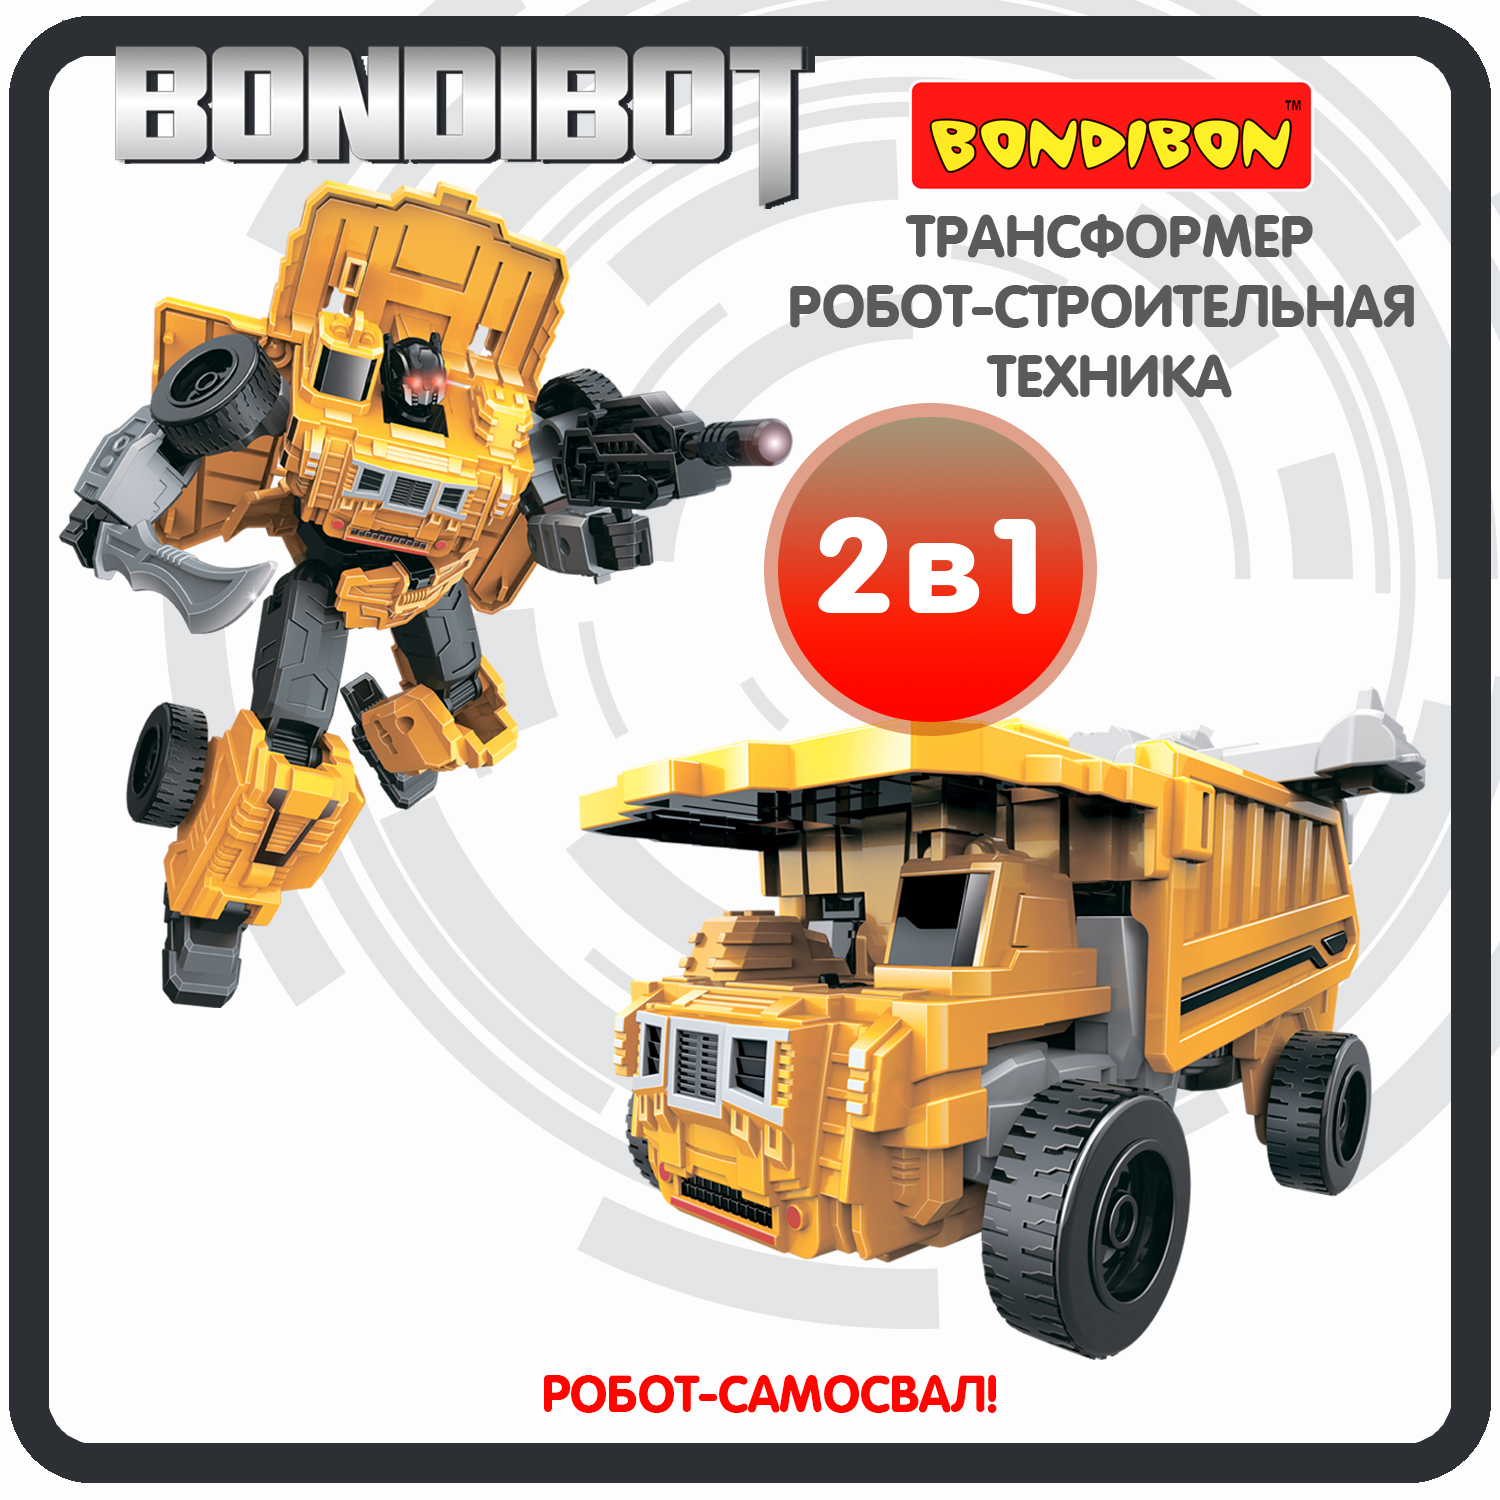 Трансформер робот-строительная техника, 2в1 BONDIBOT Bondibon, самосвал / ВВ6046 bondibon трансформер bondibot робот самосвал 2 в 1